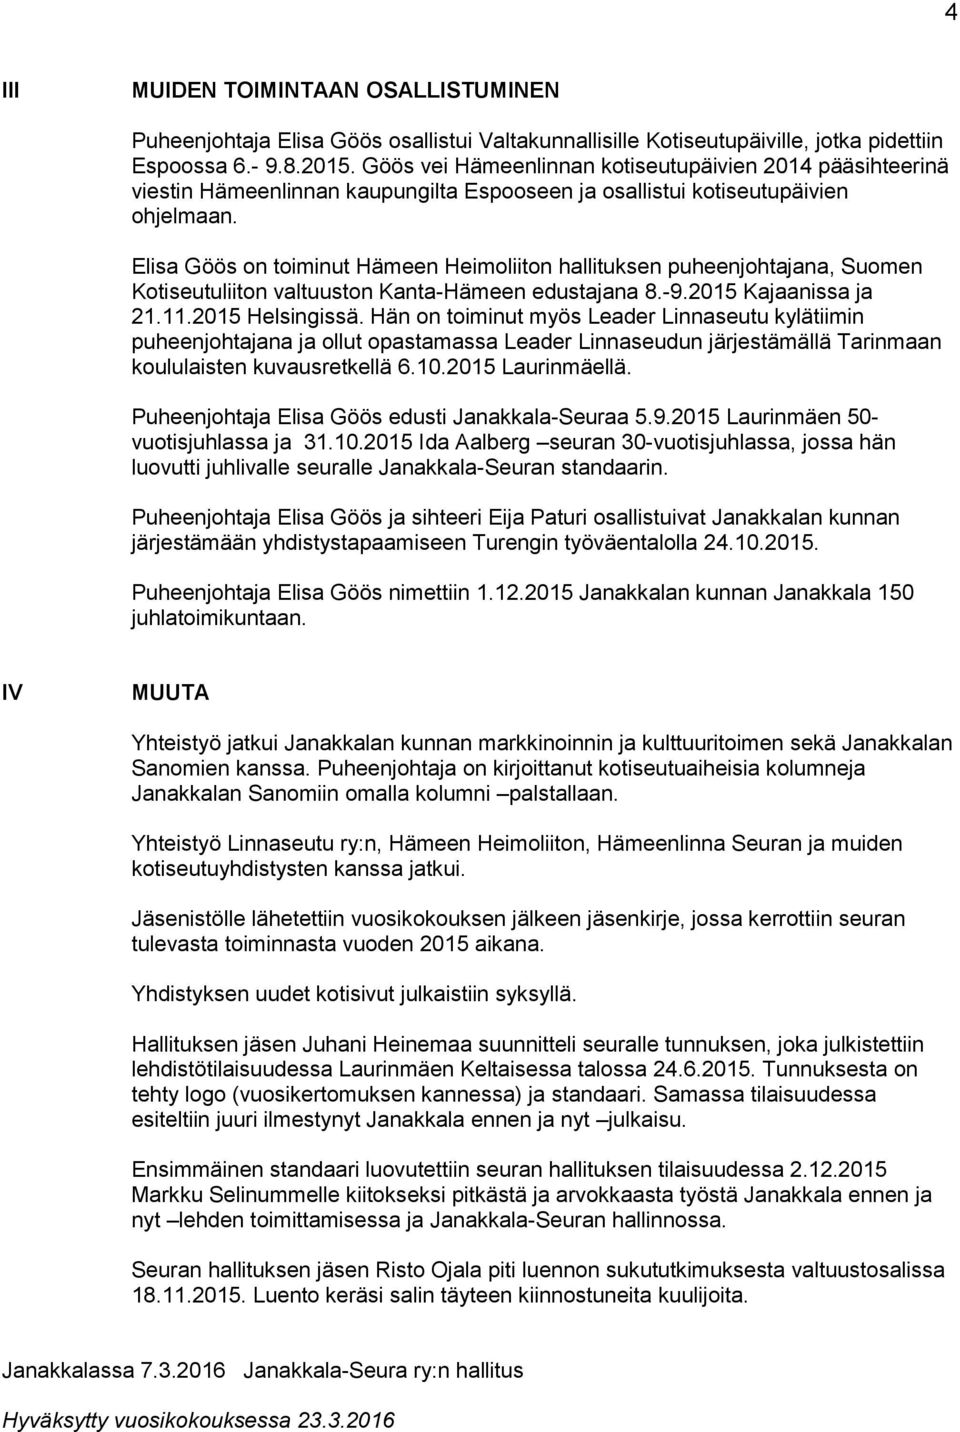 Elisa Göös on toiminut Hämeen Heimoliiton hallituksen puheenjohtajana, Suomen Kotiseutuliiton valtuuston Kanta-Hämeen edustajana 8.-9.2015 Kajaanissa ja 21.11.2015 Helsingissä.